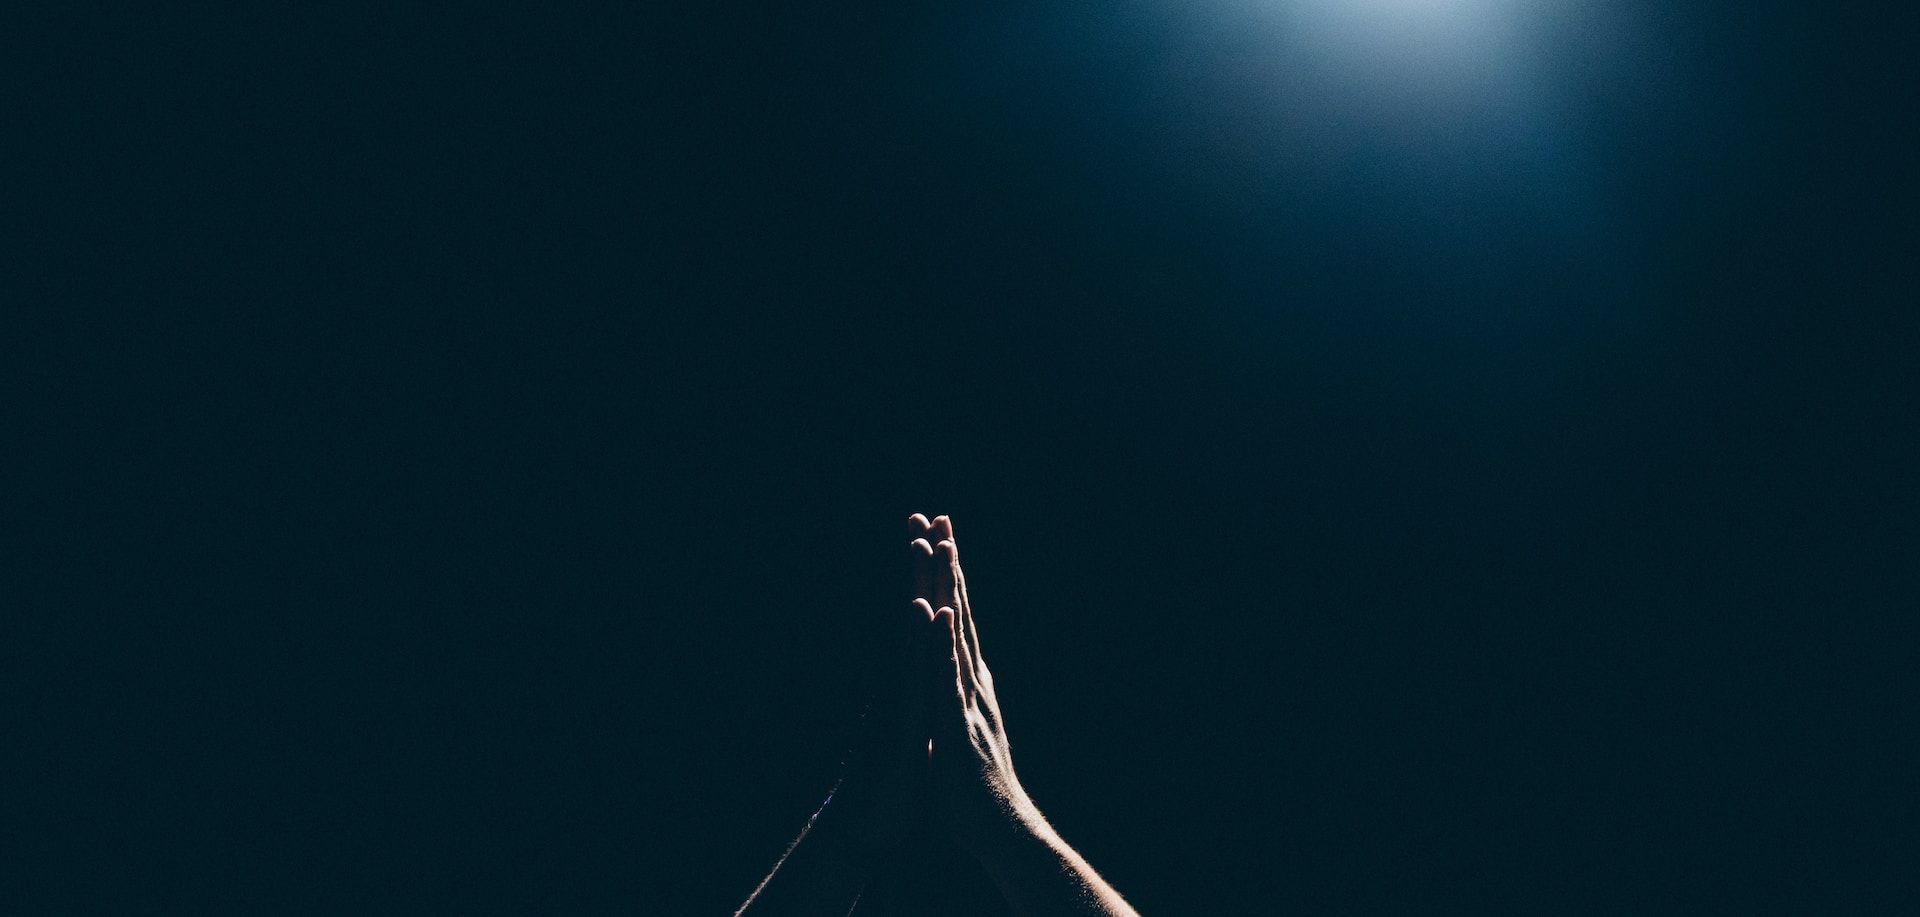 mains tendues en prière vers le ciel, dans la nuit - Photo by Amaury Gutierrez on https://unsplash.com/fr/photos/personne-levant-les-bras-rzmQOng8h8I